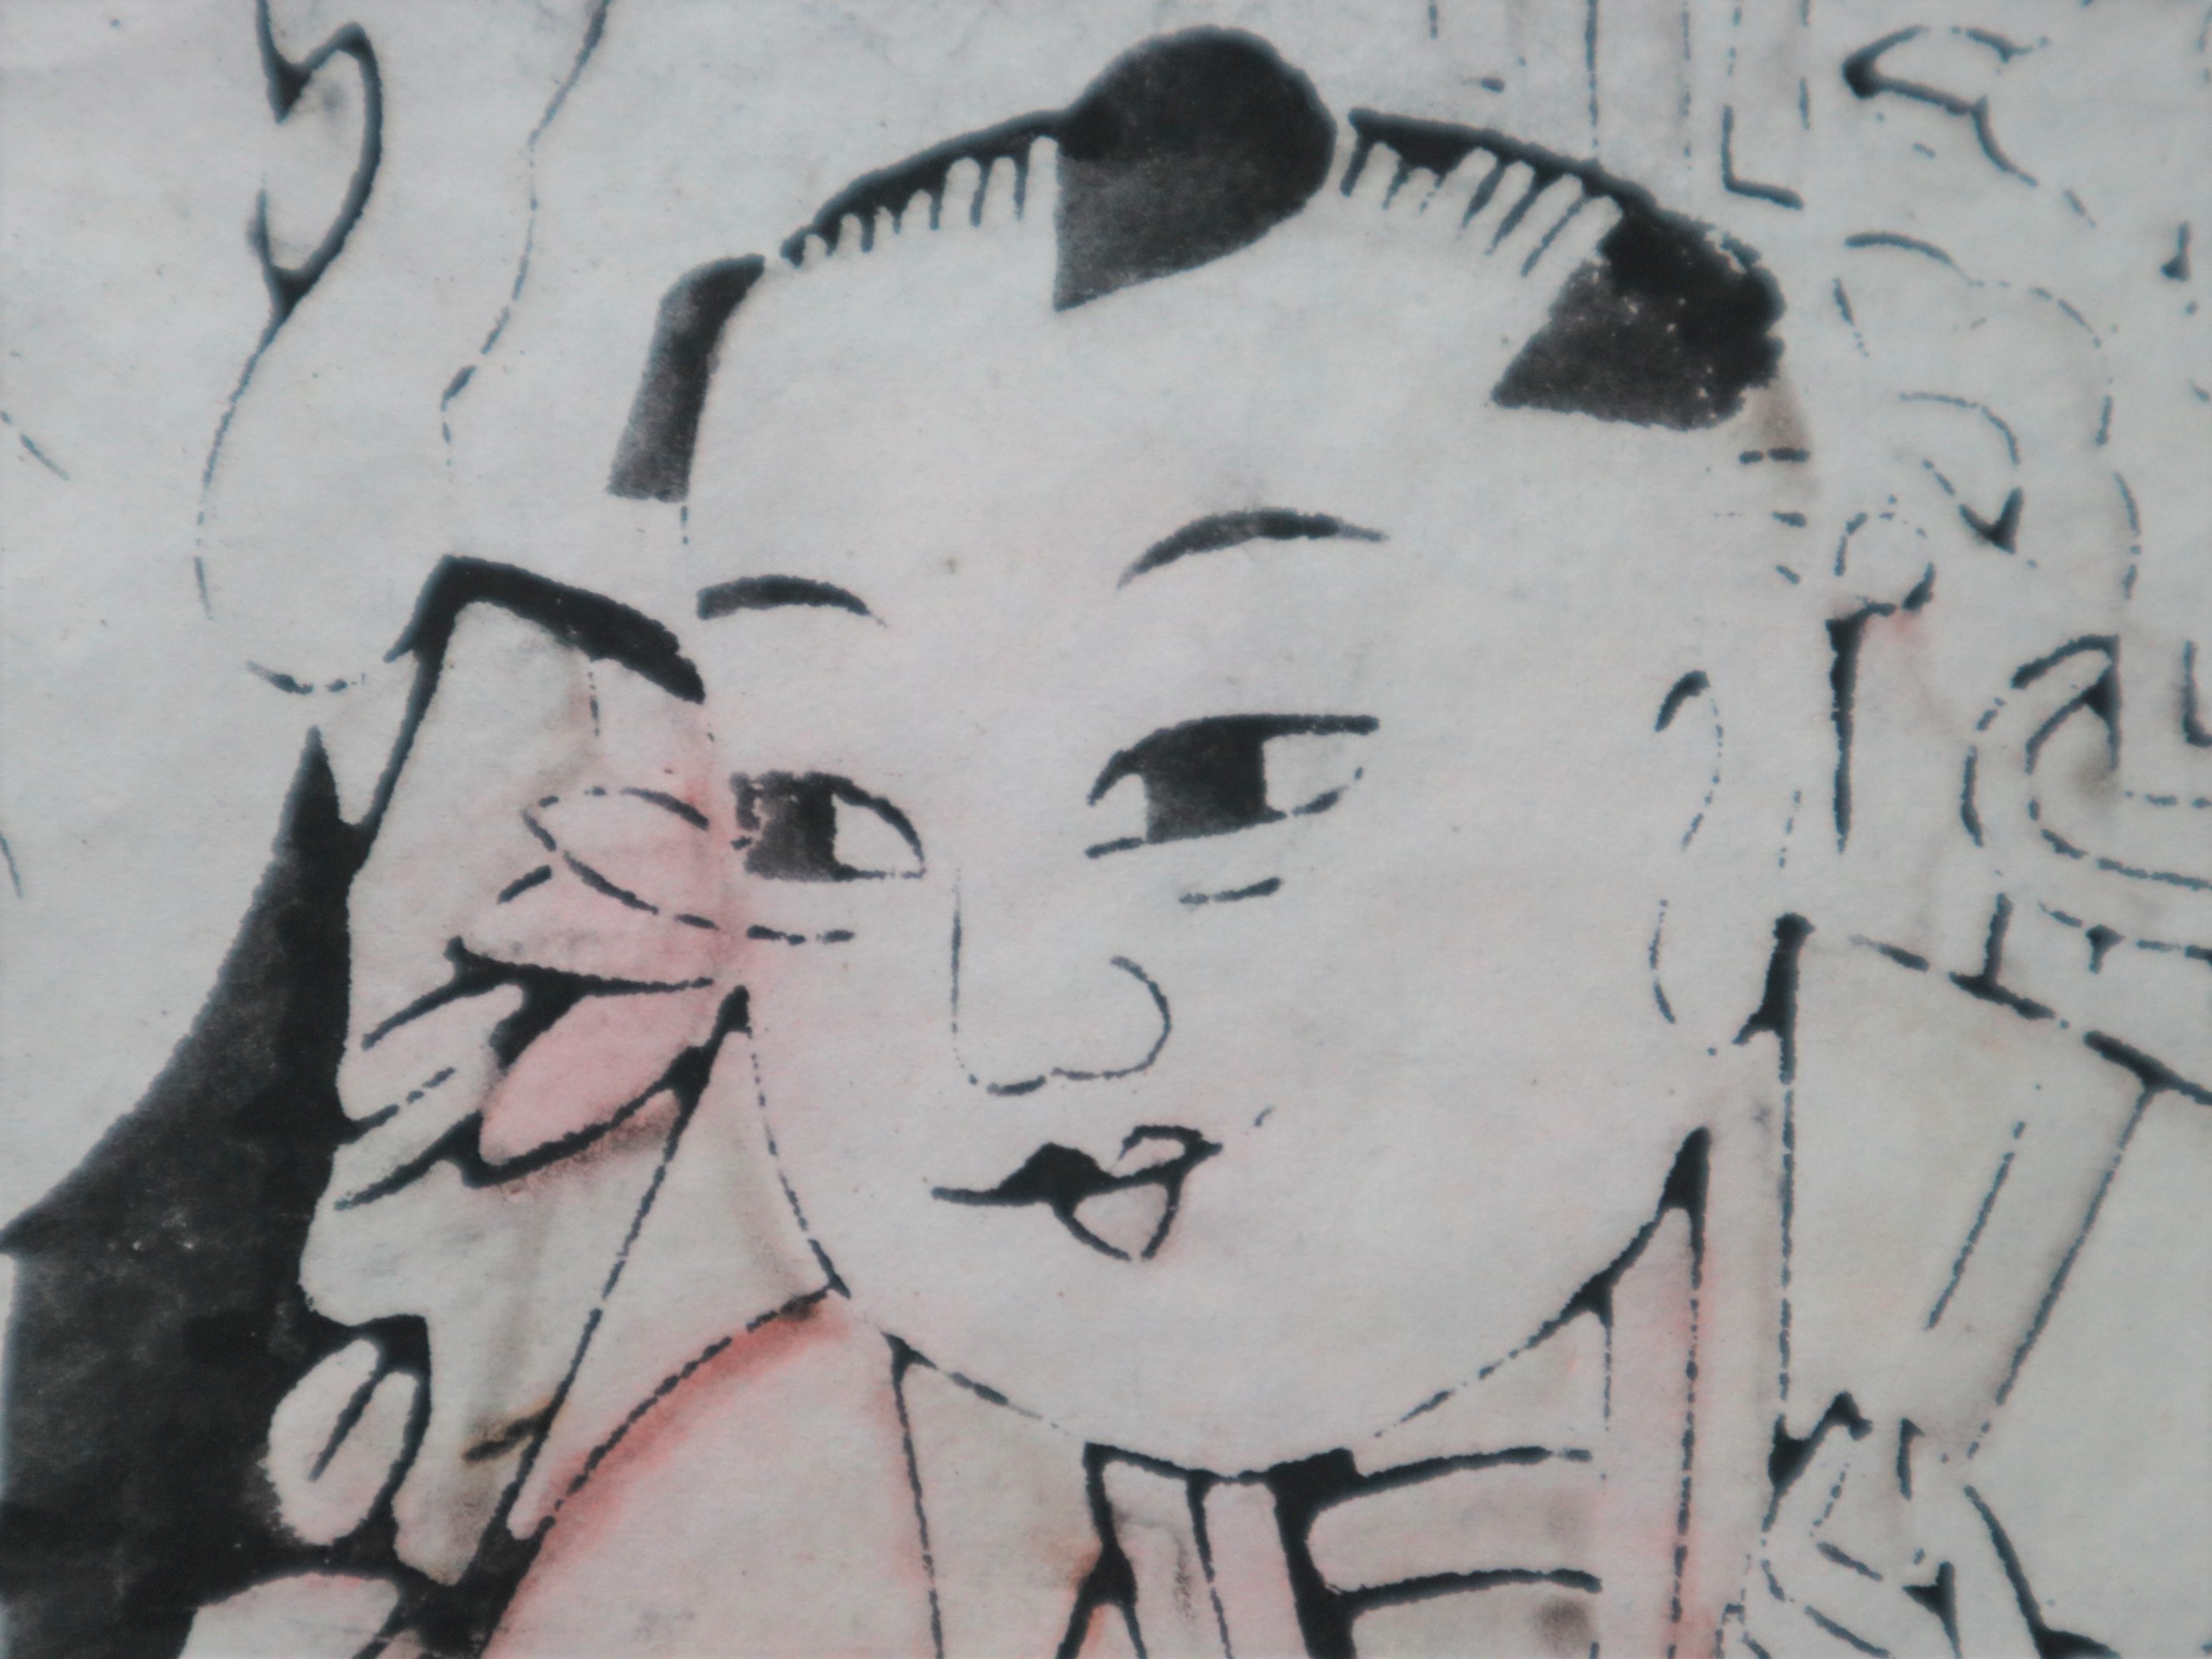 在庫お得中國 財神童子彩版畫 傳統木版画 木版画